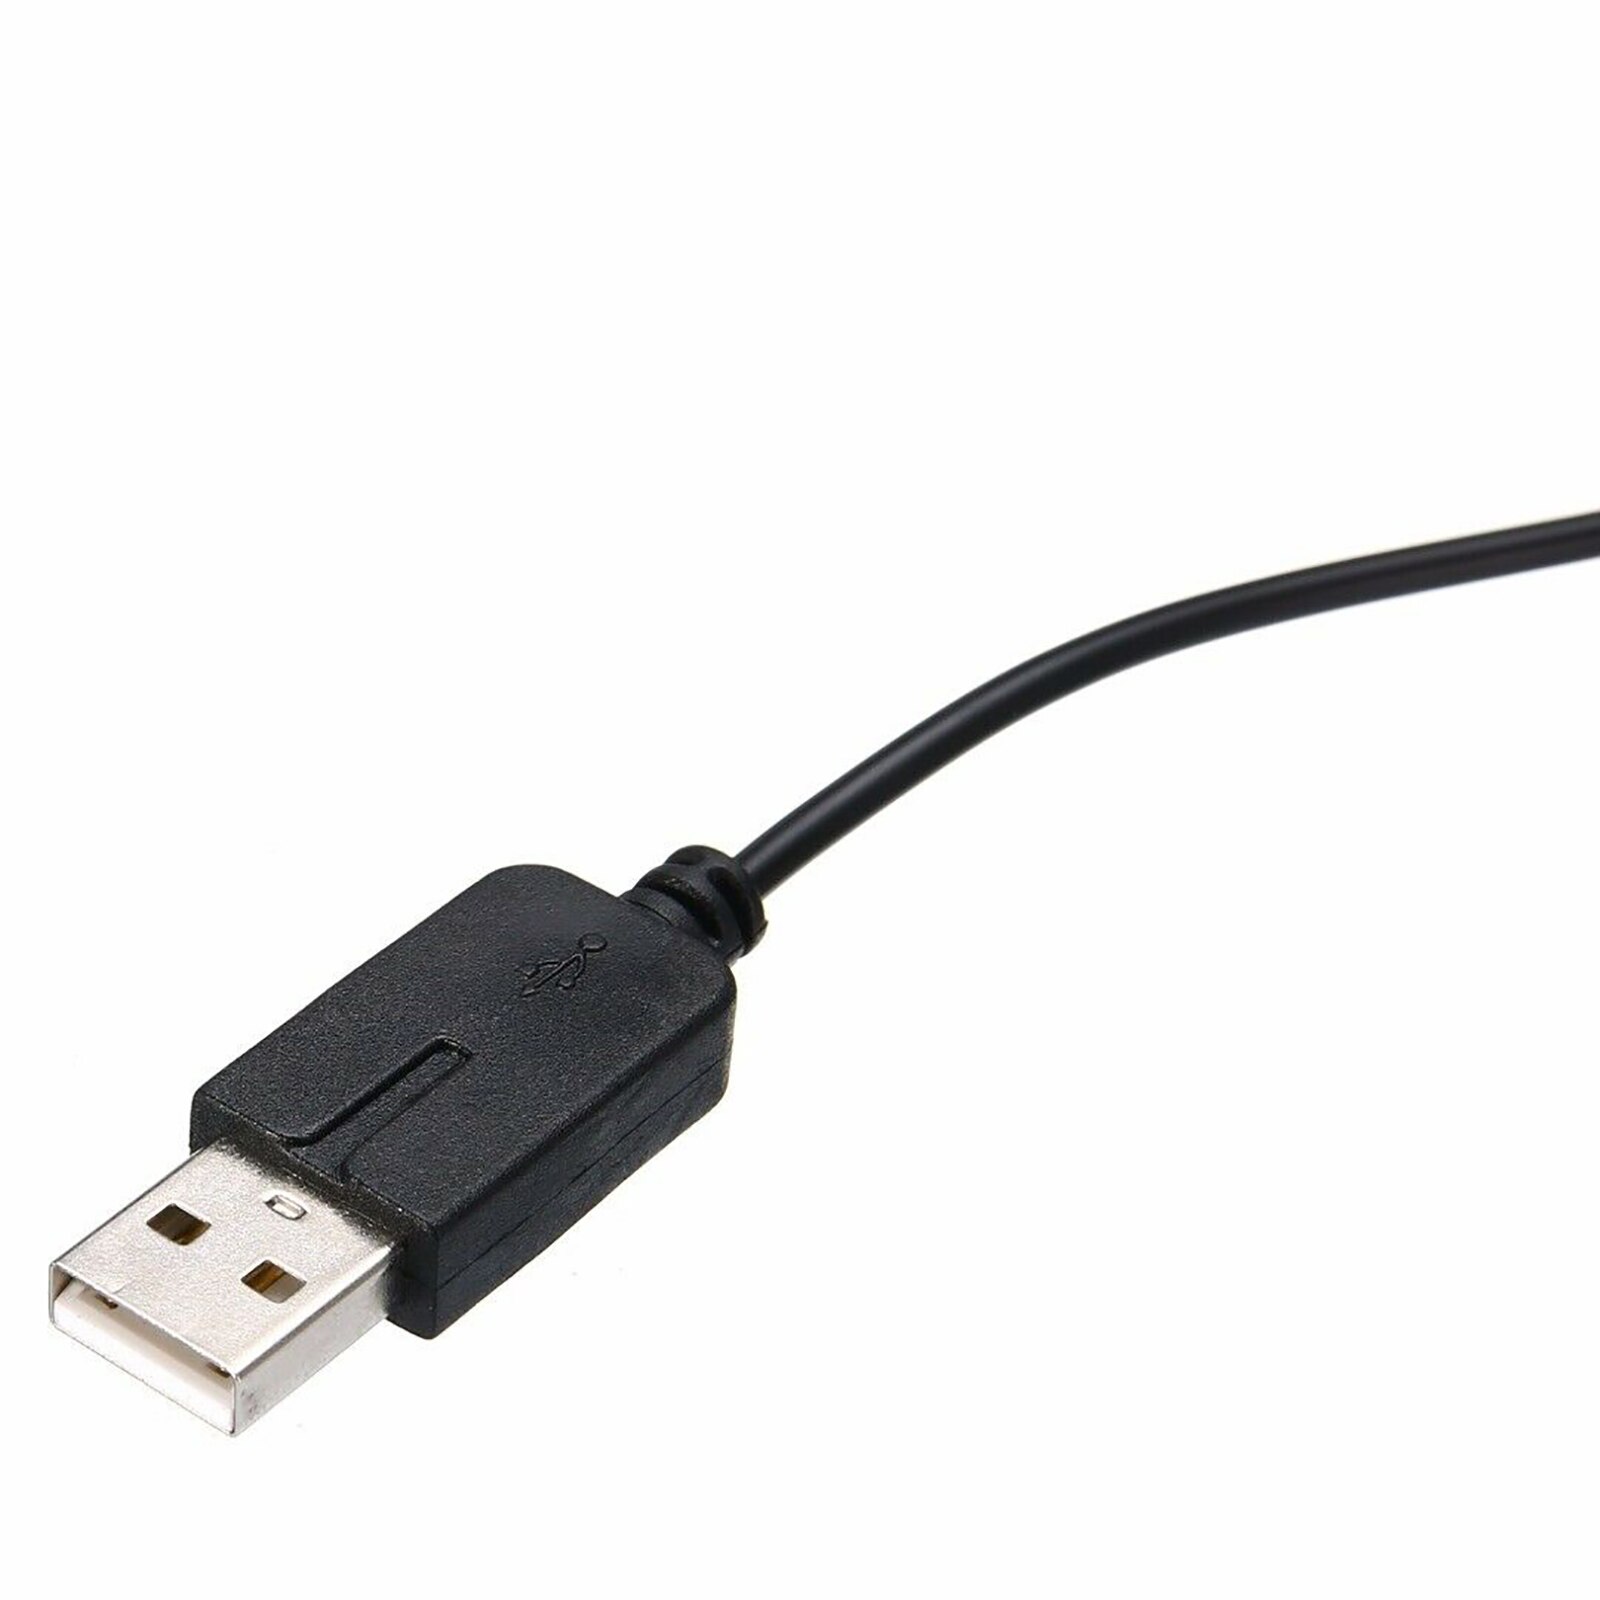 Usb Charger Power Cable Cord Lading Plug Voor 2DS 3DS 3Dsxl Dsi Dsixl Xl Niet Compatibel Met Ds, ds Lite, Wiiu